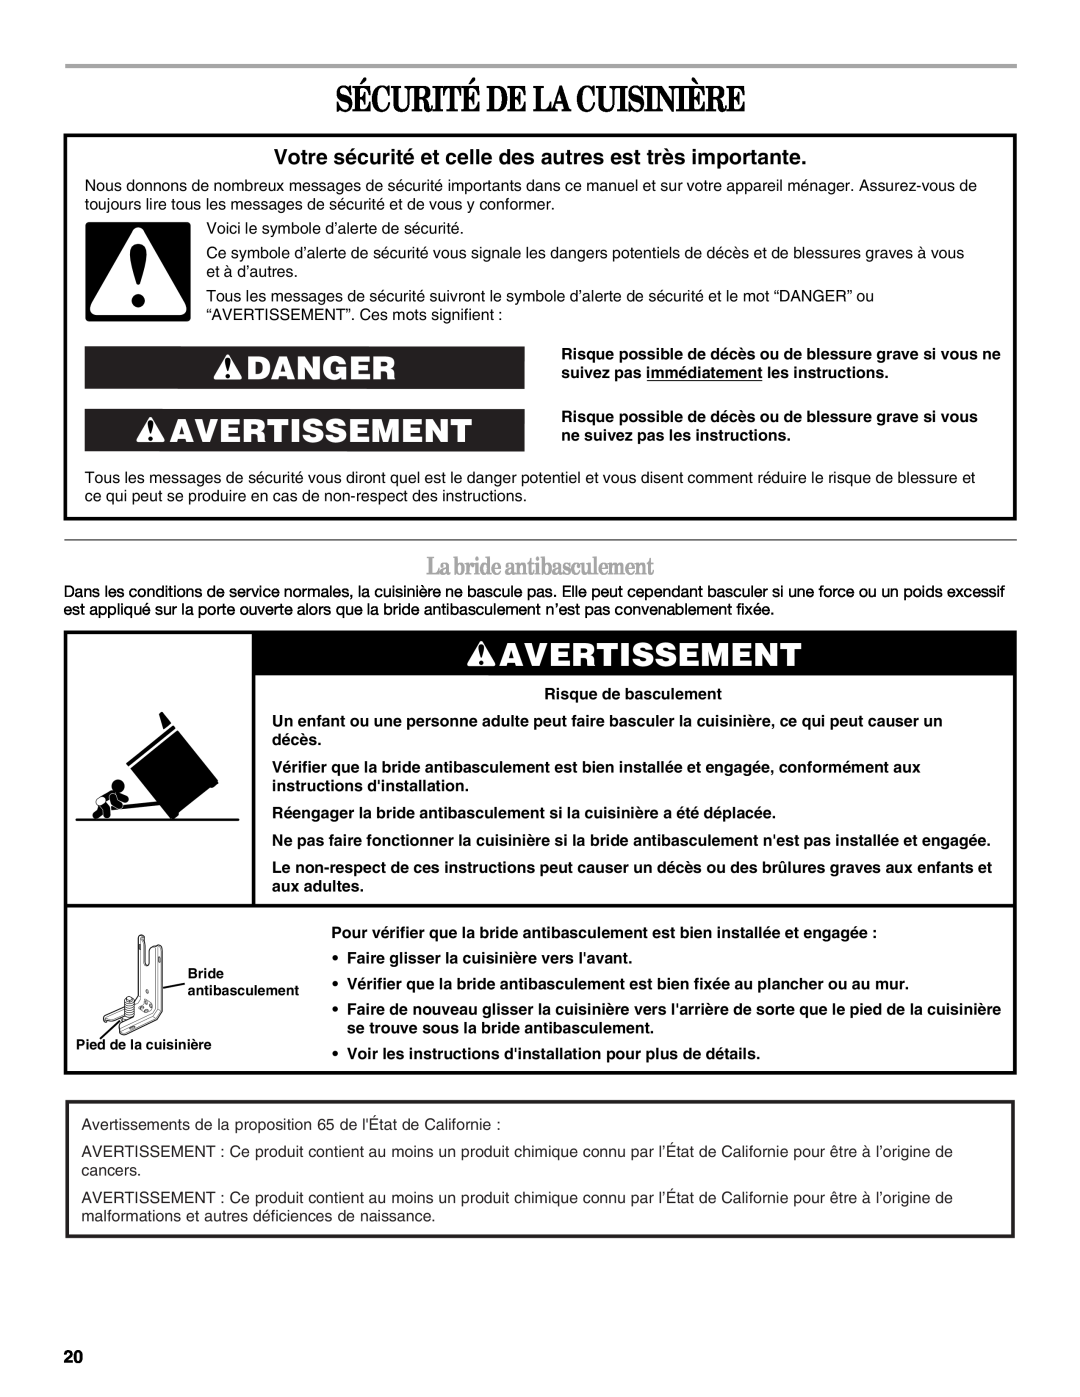 Whirlpool GY399LXUQ manual Sécurité De La Cuisinière, Danger Avertissement, Labrideantibasculement, Risque de basculement 